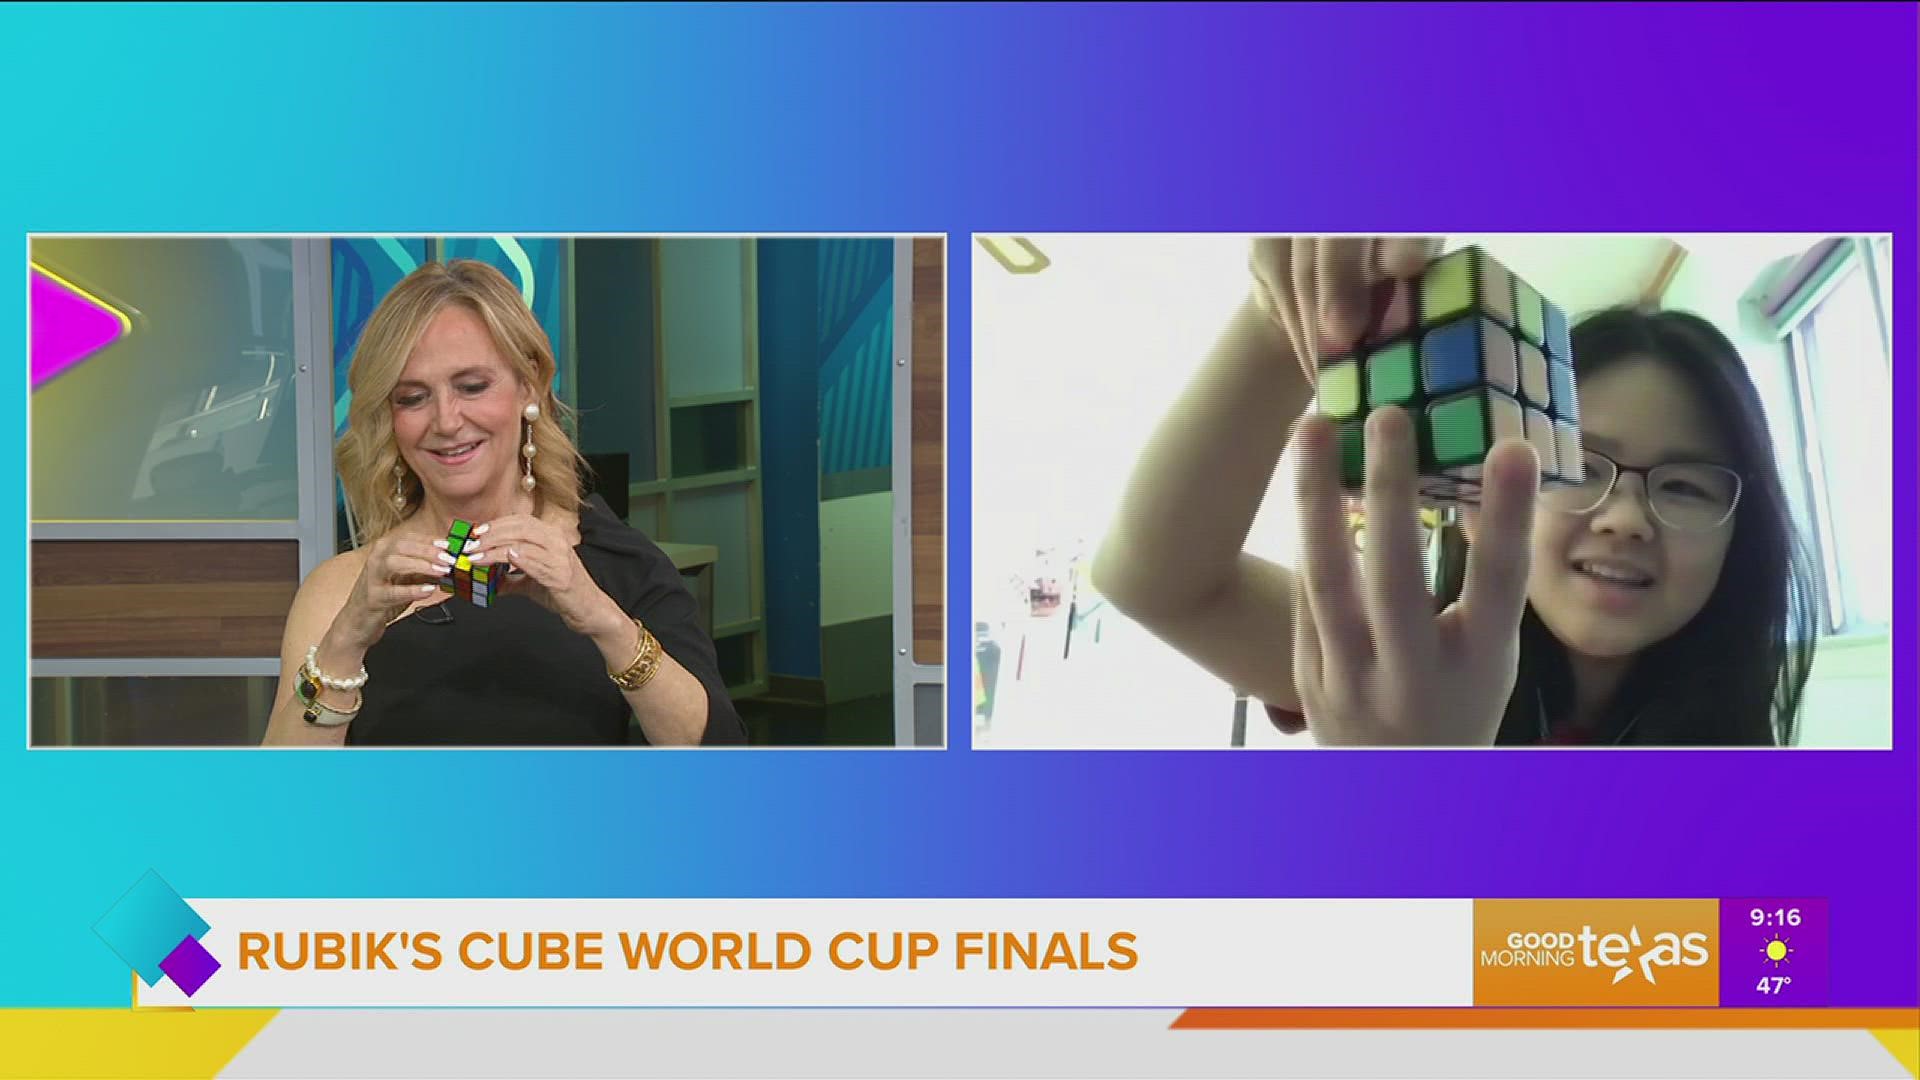 Speedcuber Dana Yi shares her tips and tricks for solving the Rubik's Cube